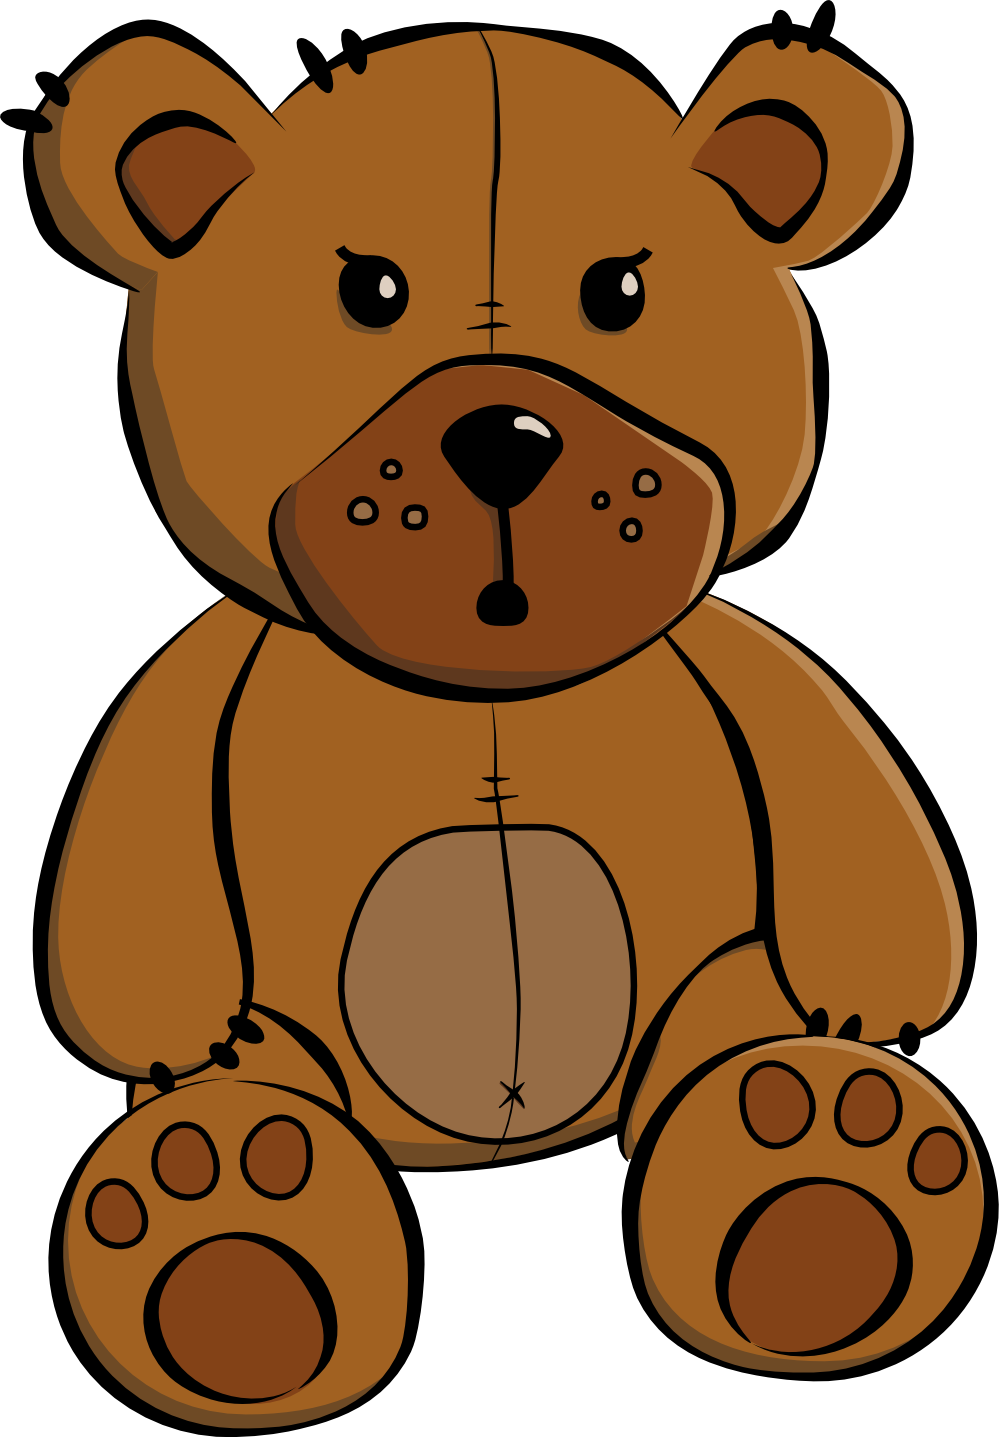 Big Cute Teddy Bears Free Cli